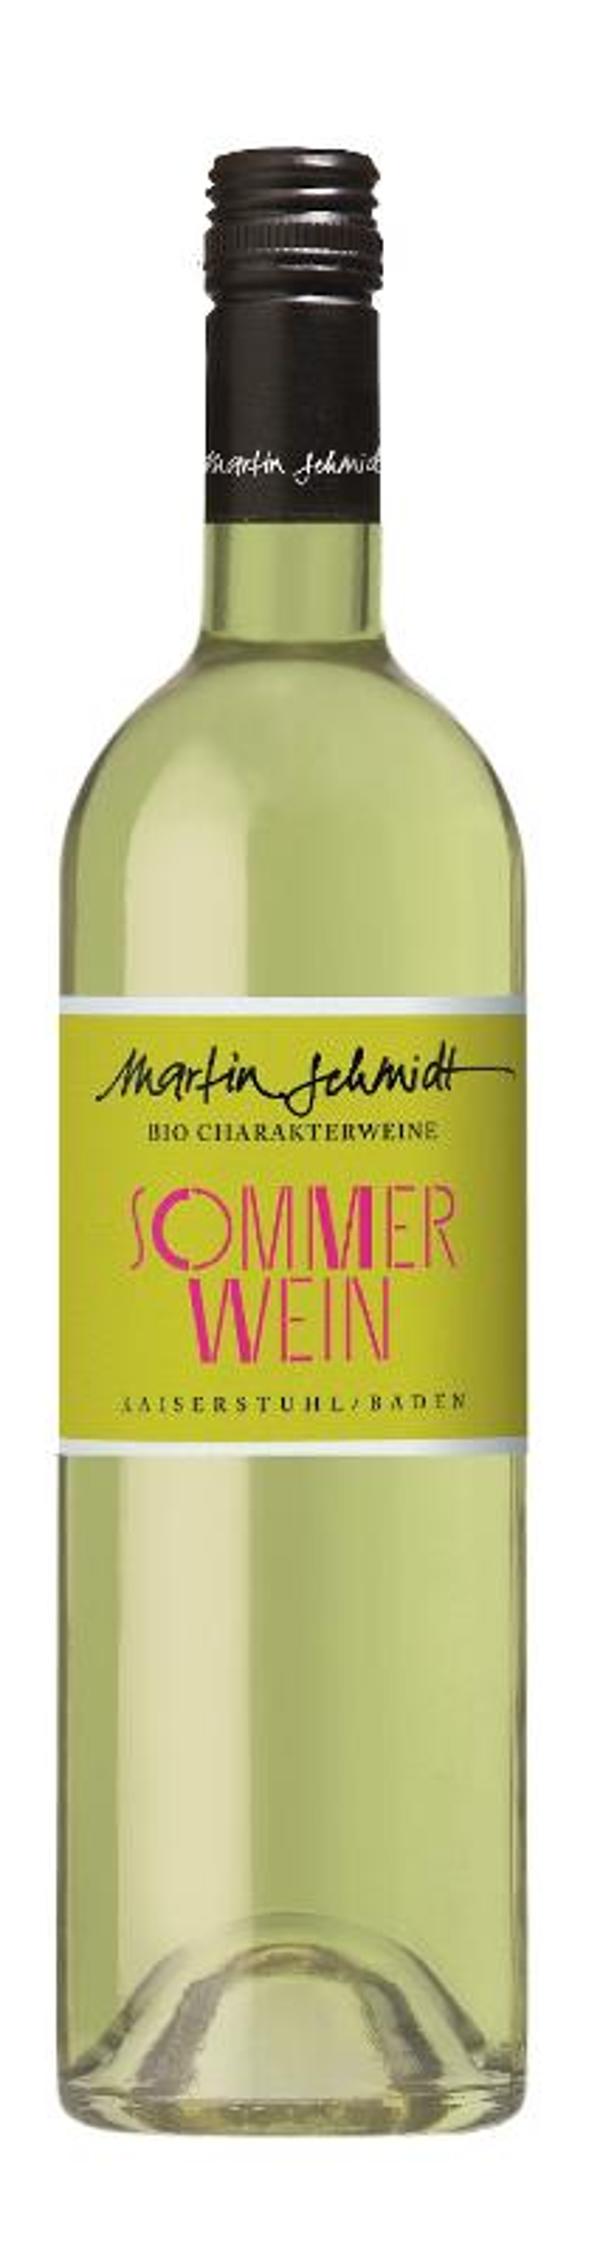 Produktfoto zu Sommerwein weiß, 0,75 l